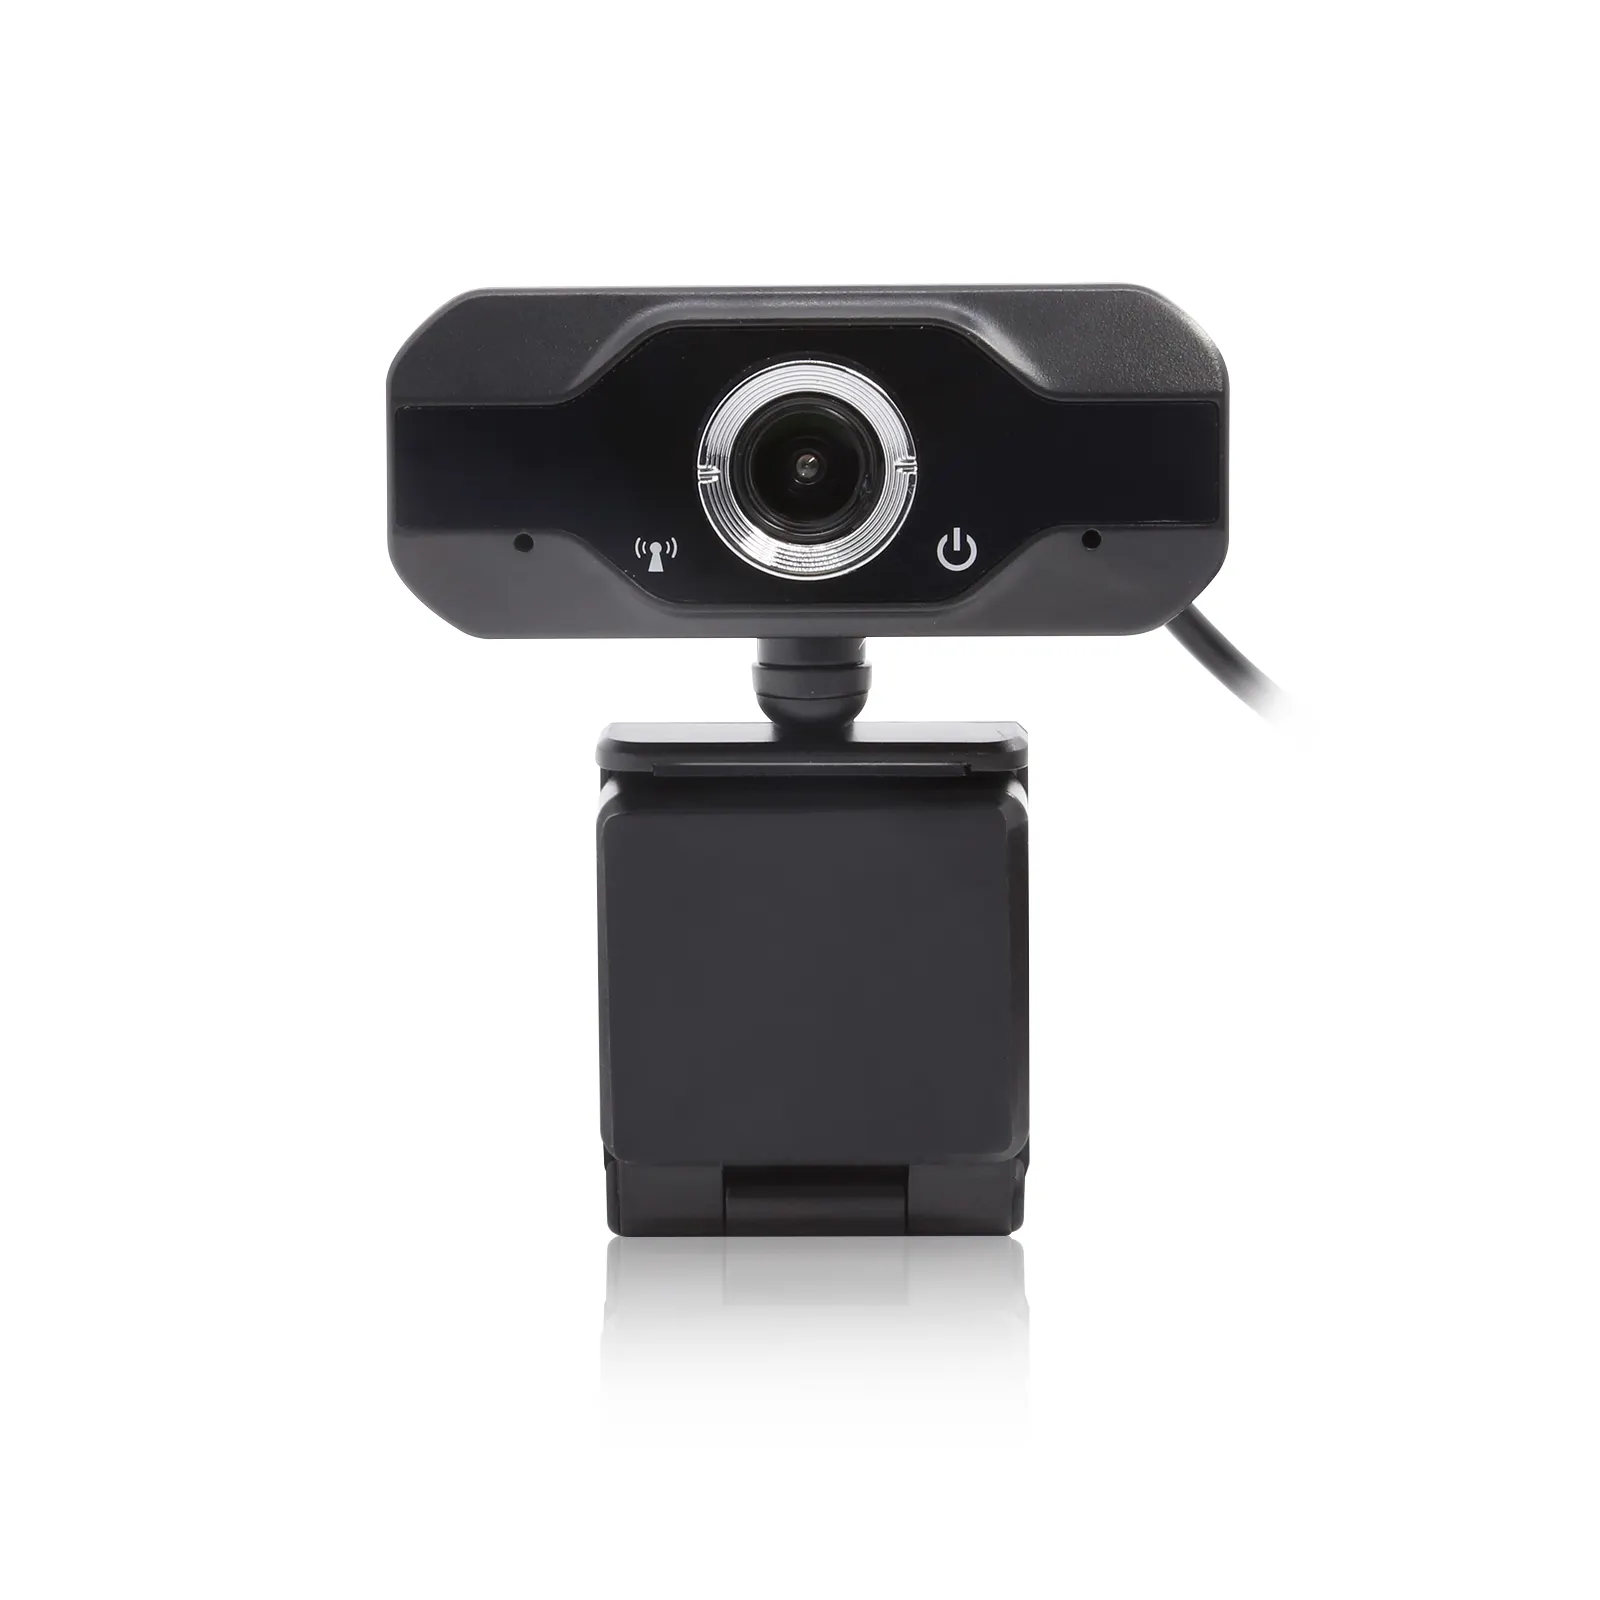 USB2.0 macho y 720P altamente sensible camioneta HD PC cámara Web para Video conferencia de enseñanza en línea por supuesto